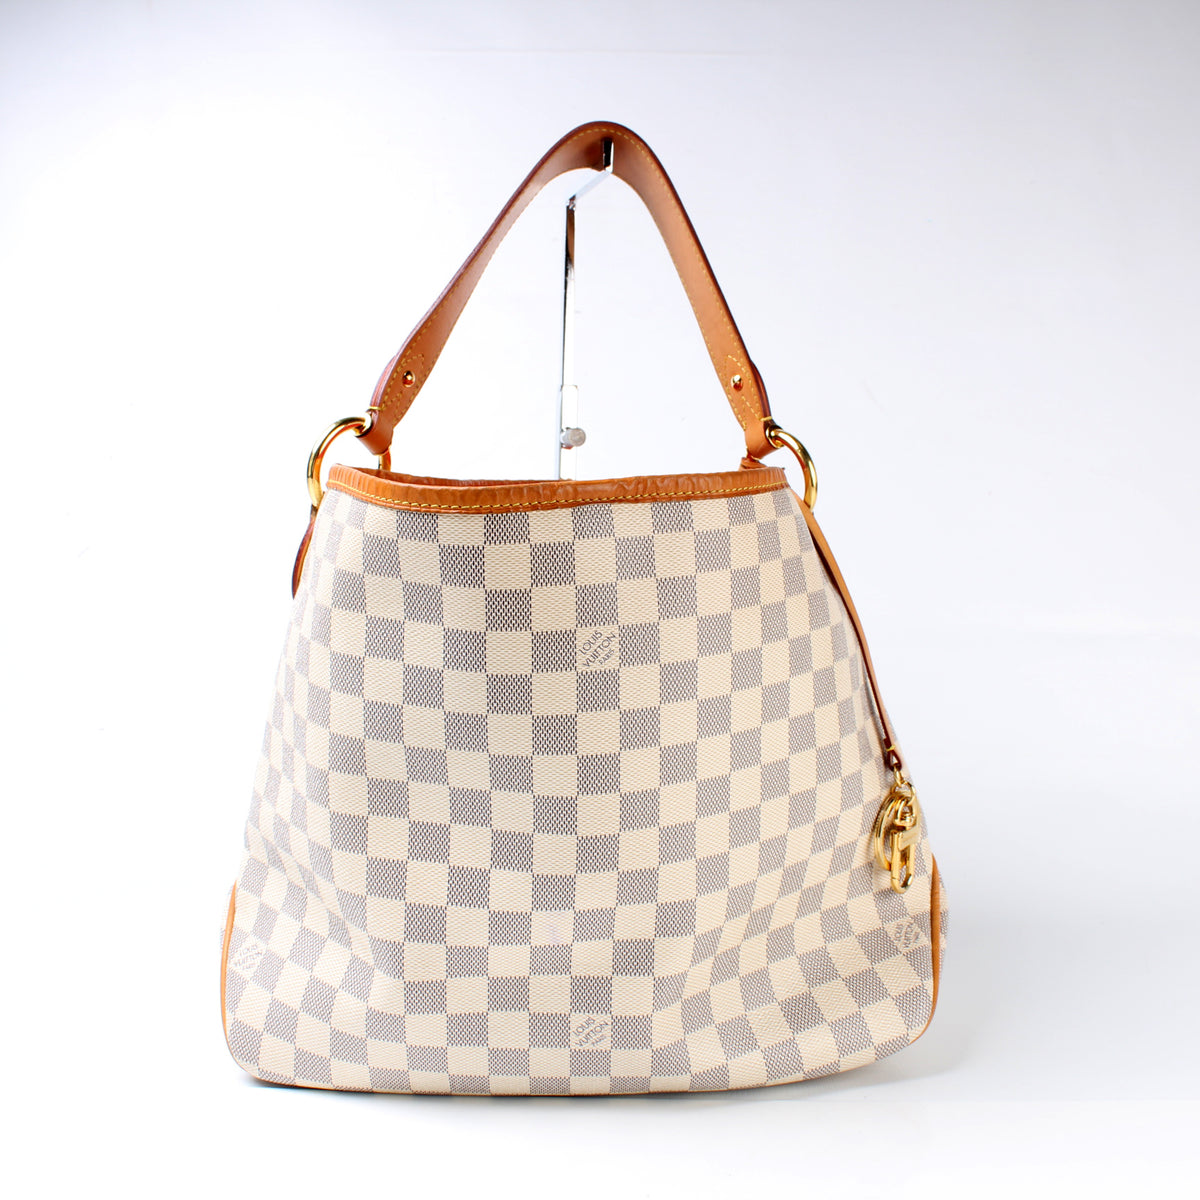 Louis Vuitton Delightful Damier Azur Handbag Purse Review and what fits!  Resale talk! 